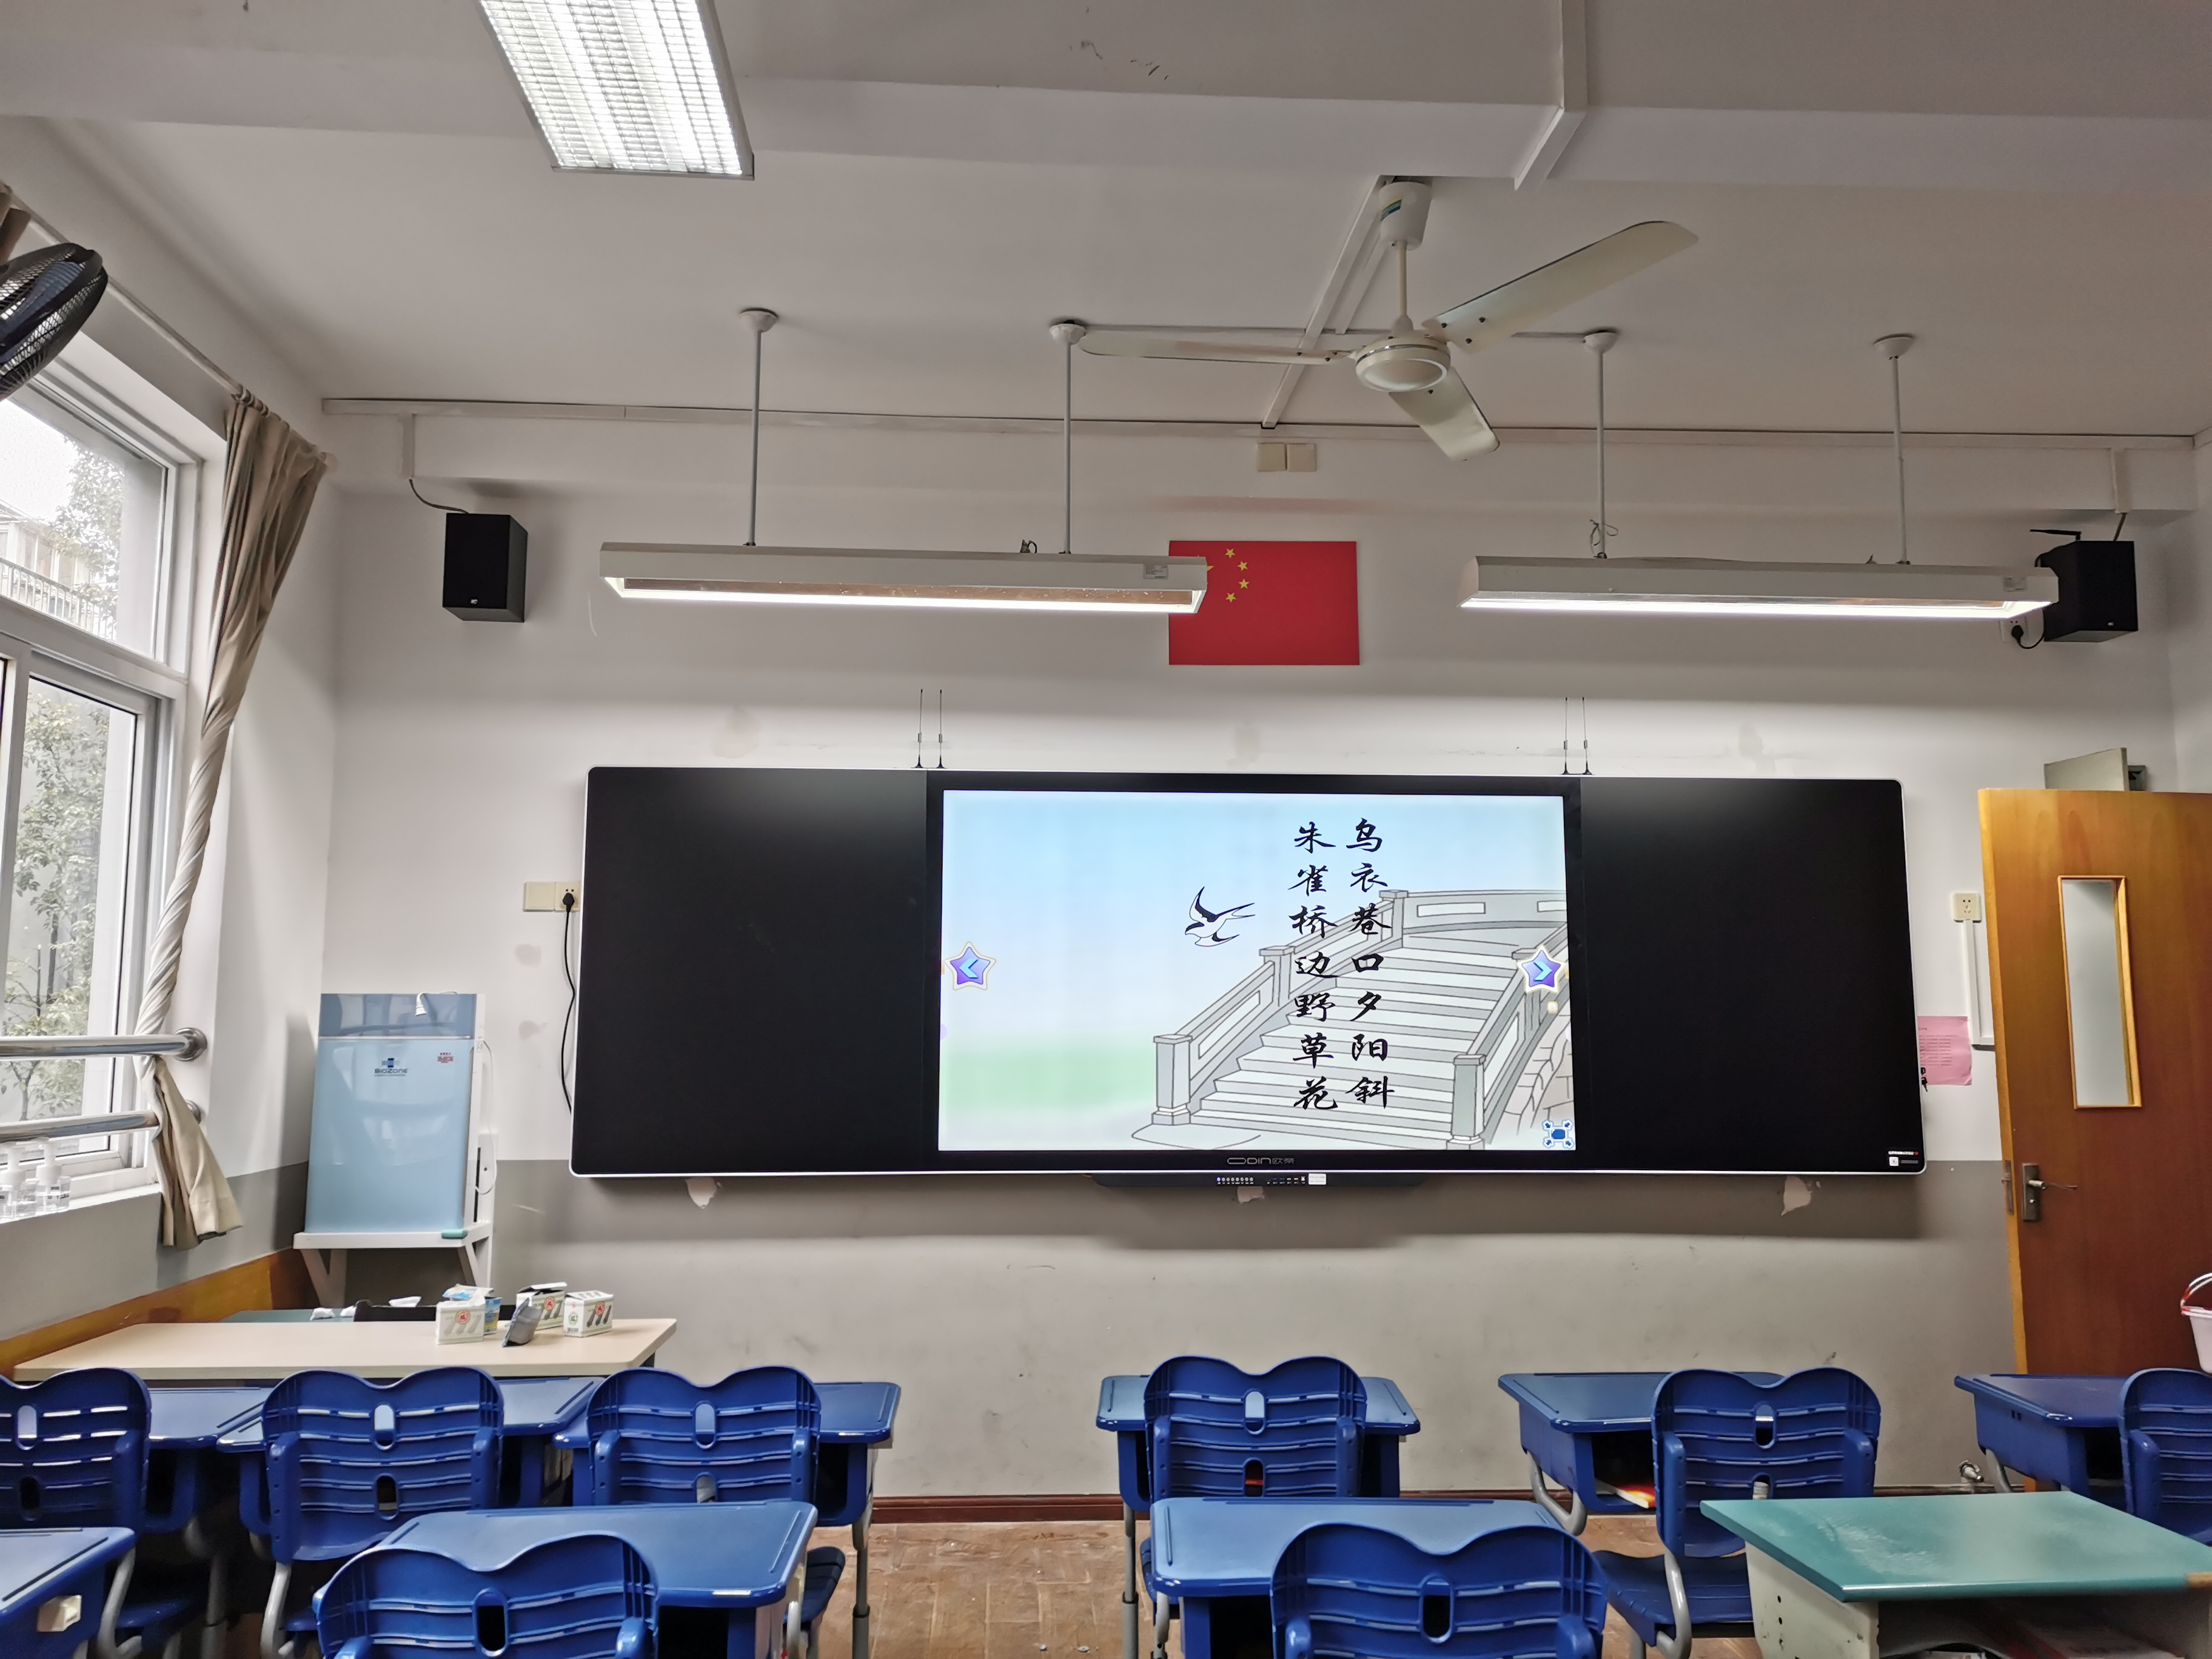 互动教学85寸纳米智慧黑板中异班班通多功能互动教学85寸纳米智慧黑板ZYEE185